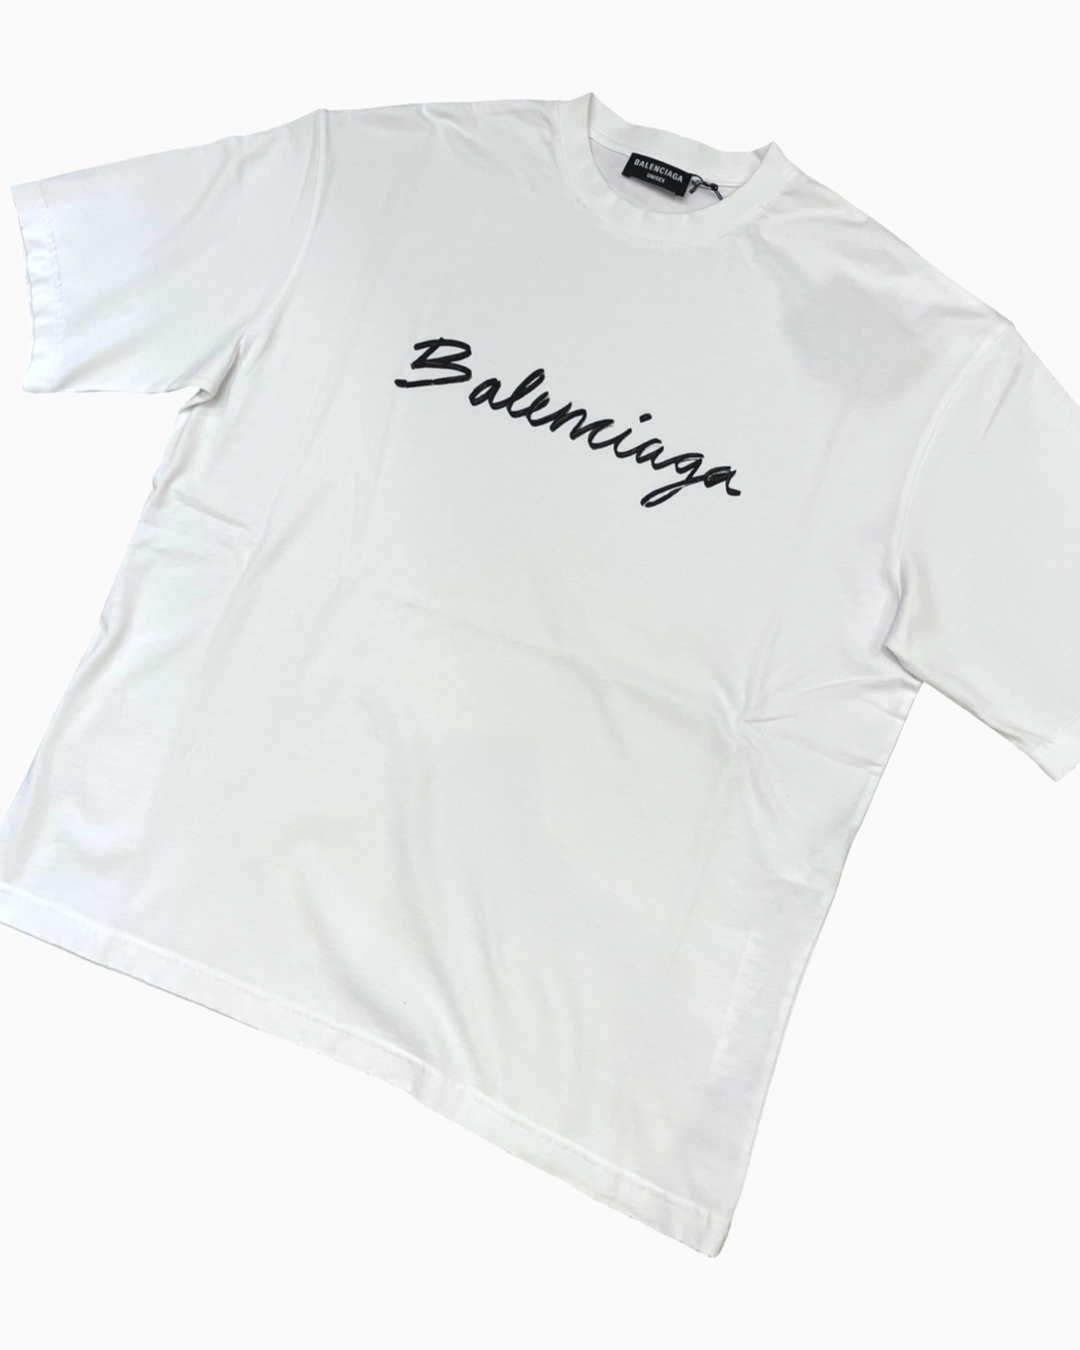 Balenciaga Grey Cotton Logo Print Crewneck T-Shirt XS Balenciaga